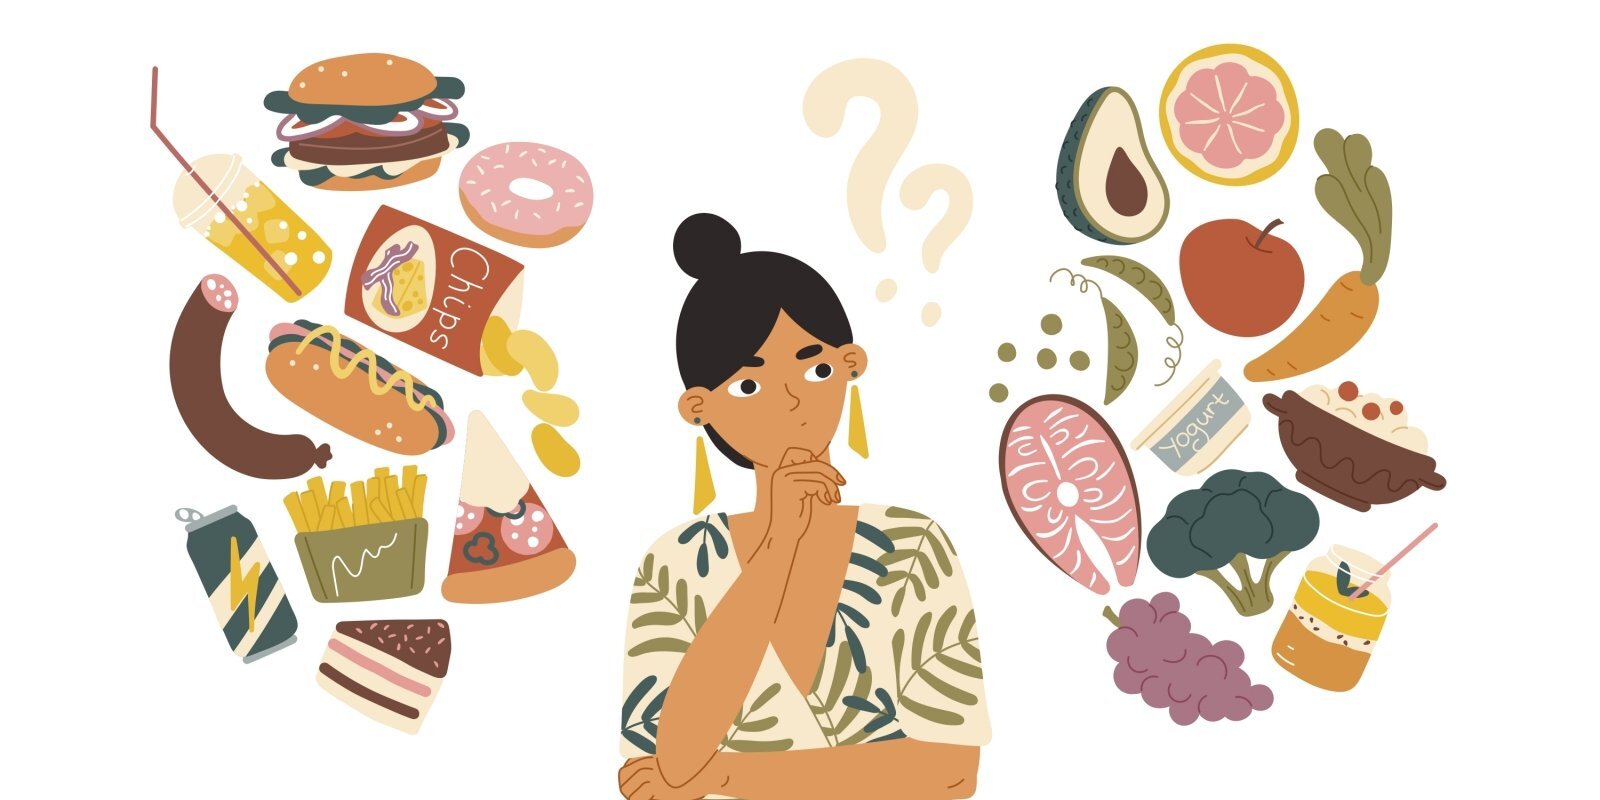 Обязательный завтрак и другие мифы о питании. 7 ответов на важные вопросы от диетолога Лолиты Неймане